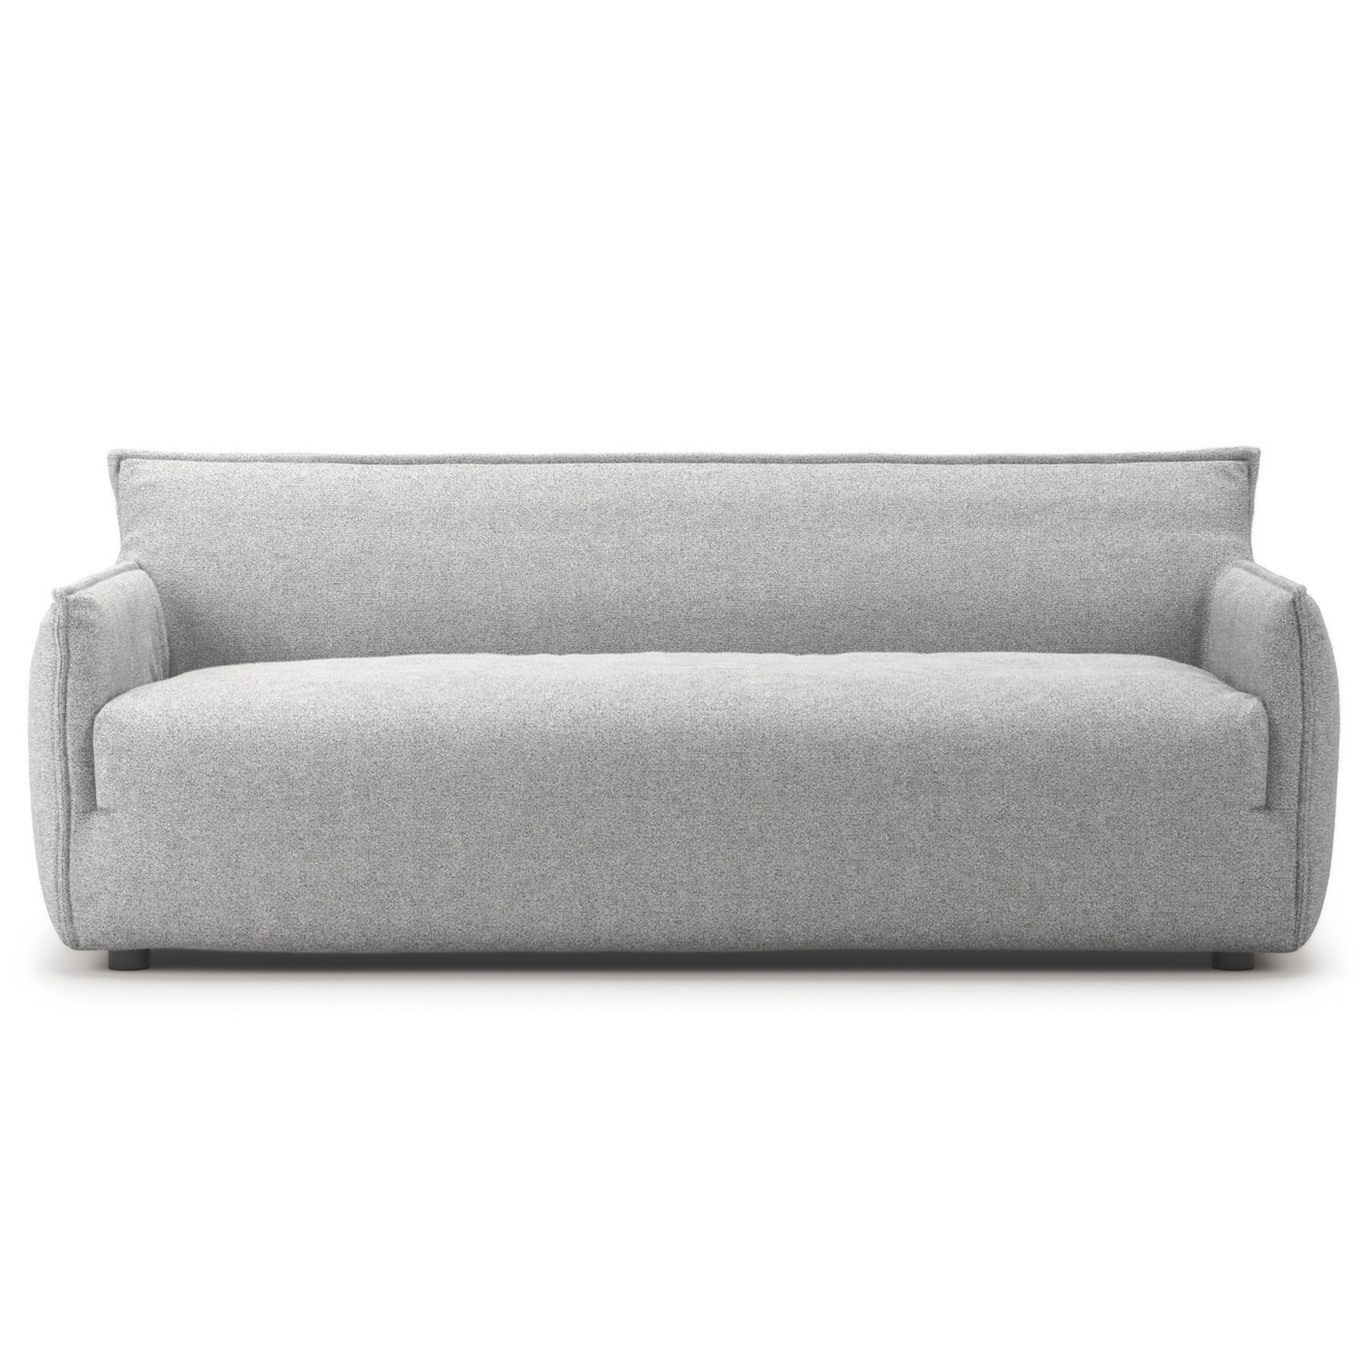 Le Petite 3-Seter Sofa, Pacific white